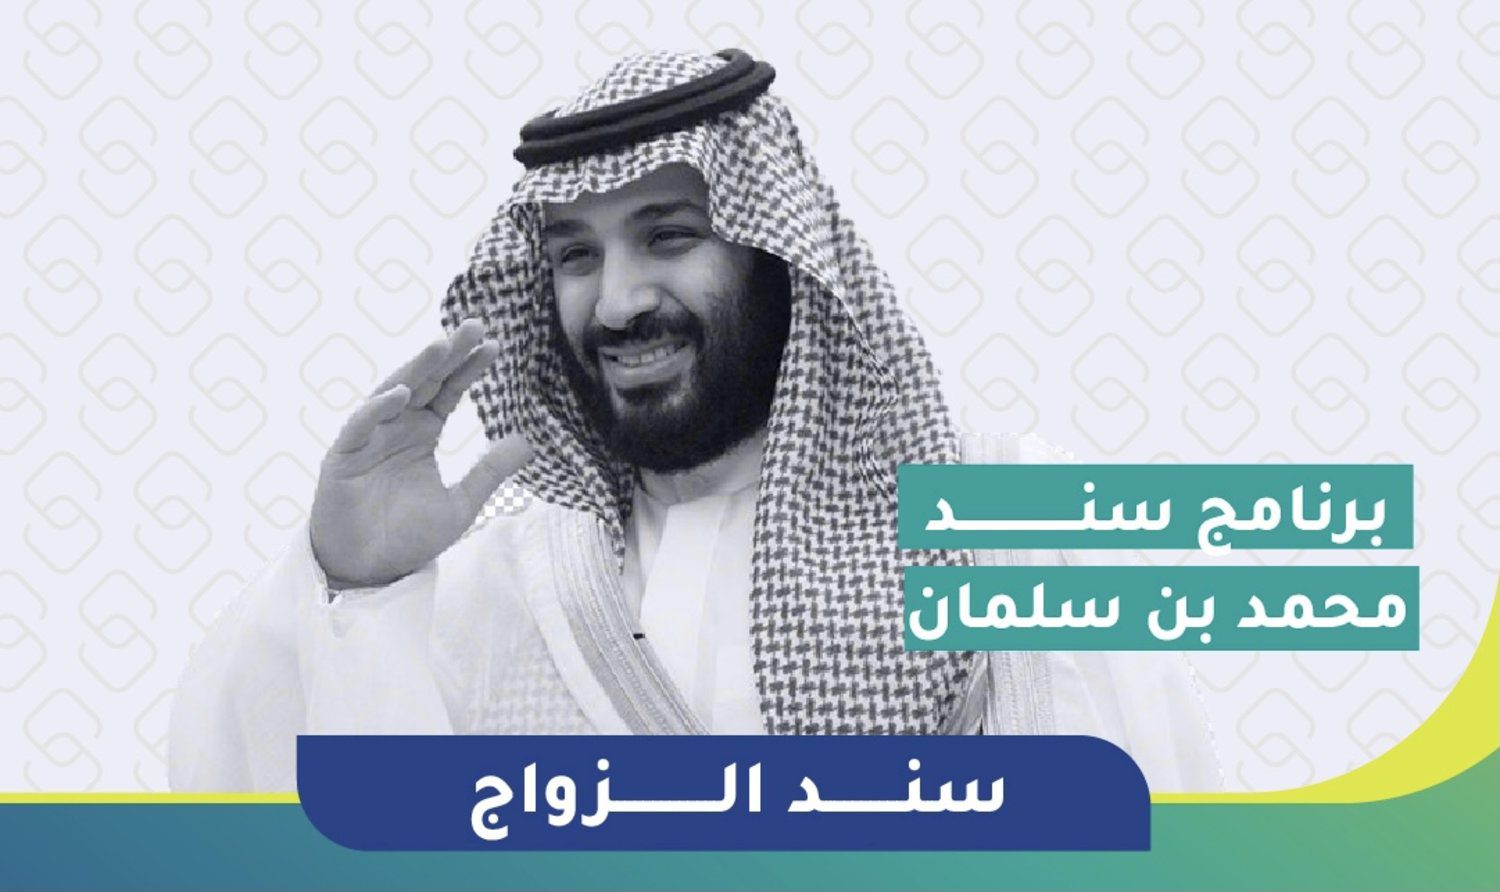 التسجيل في سند الأمير محمد بن سلمان للمقبلين علي الزواج والمطلقات والأرامل